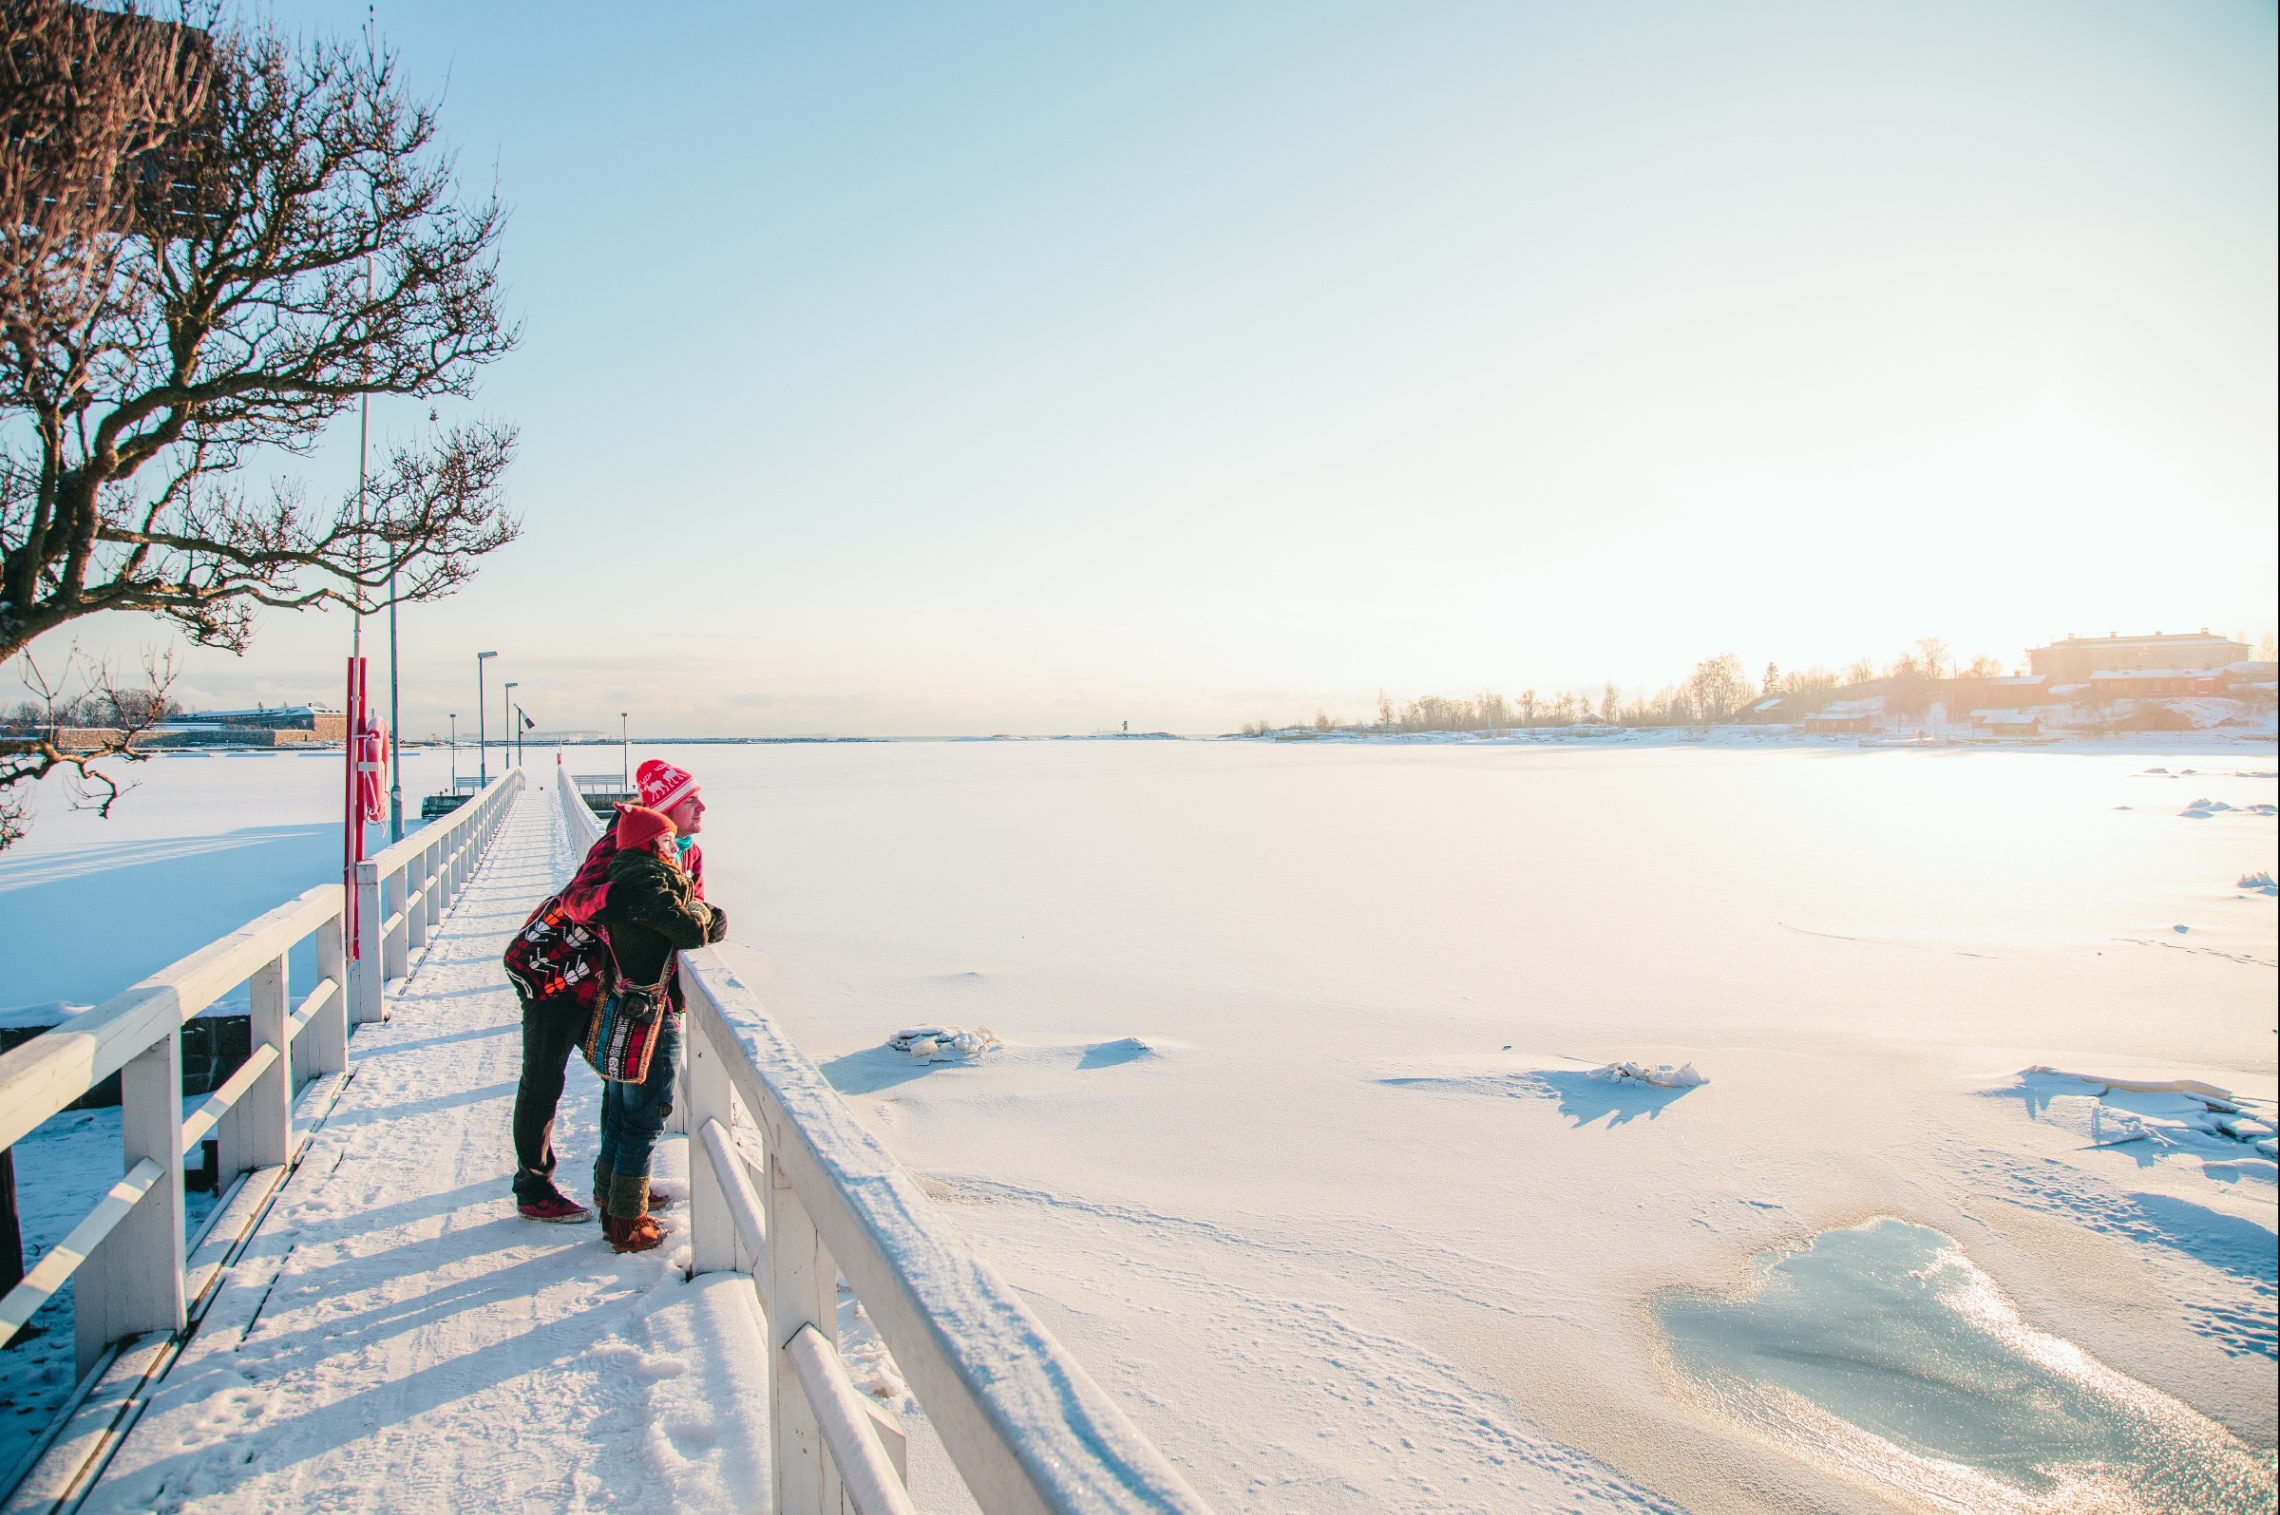 Kuvassa kaksi henkilöä seisoo valkoisella sillalla talvisessa ja aurinkoisessa säässä.